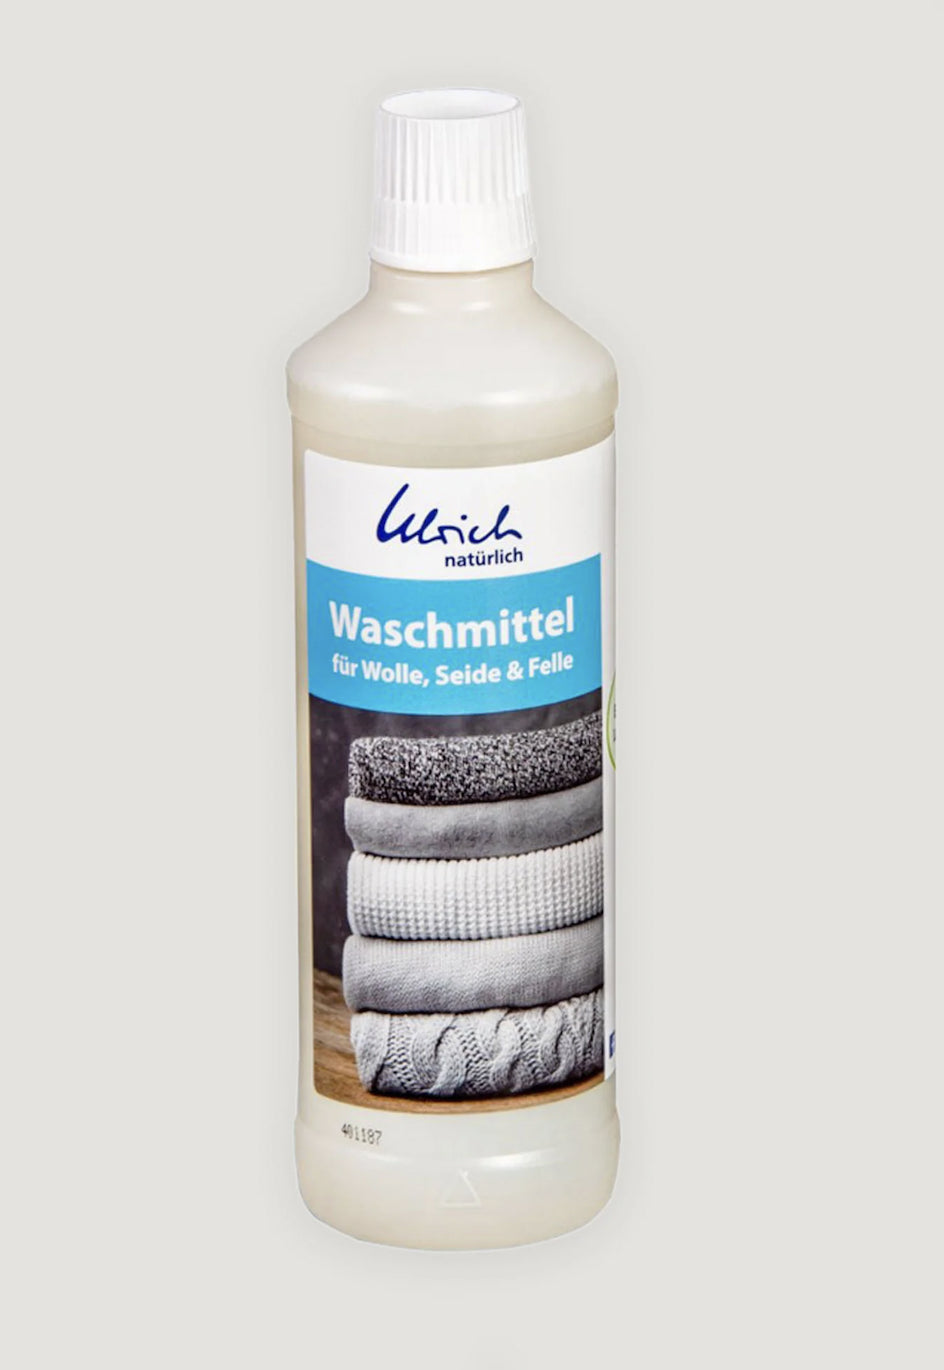 Detergent cu lanolina pentru lana, matase si blanita, ecologic - Ulrich Naturlich - 500ml